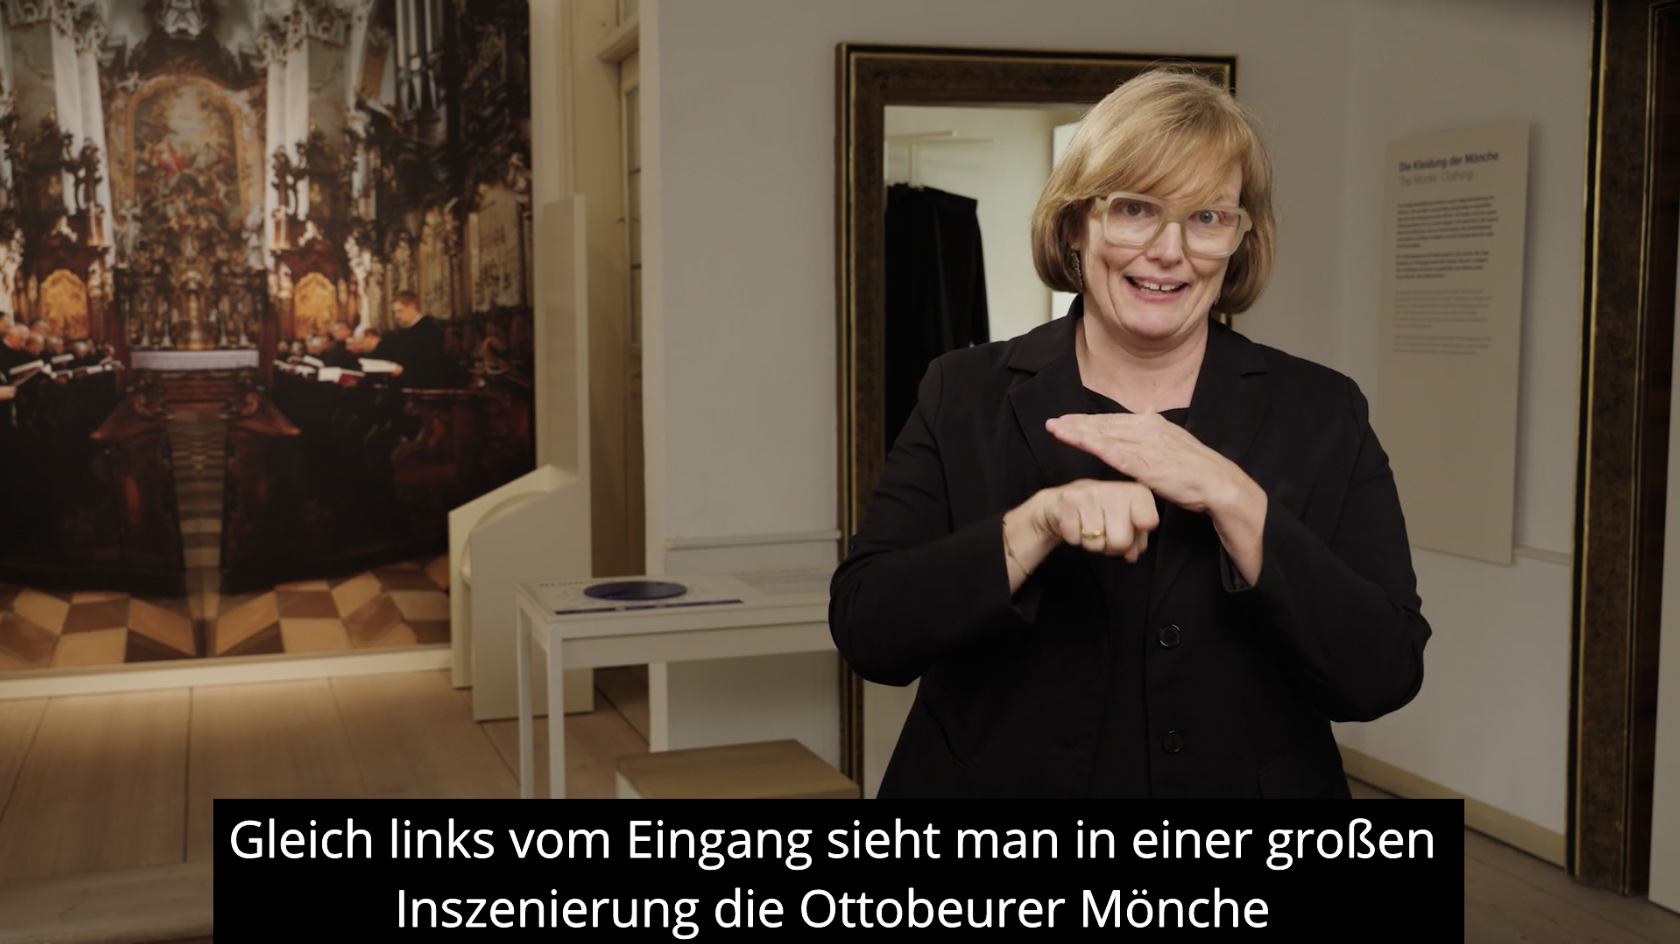 Referenz Untertitelung Klostermuseum Ottobeuren